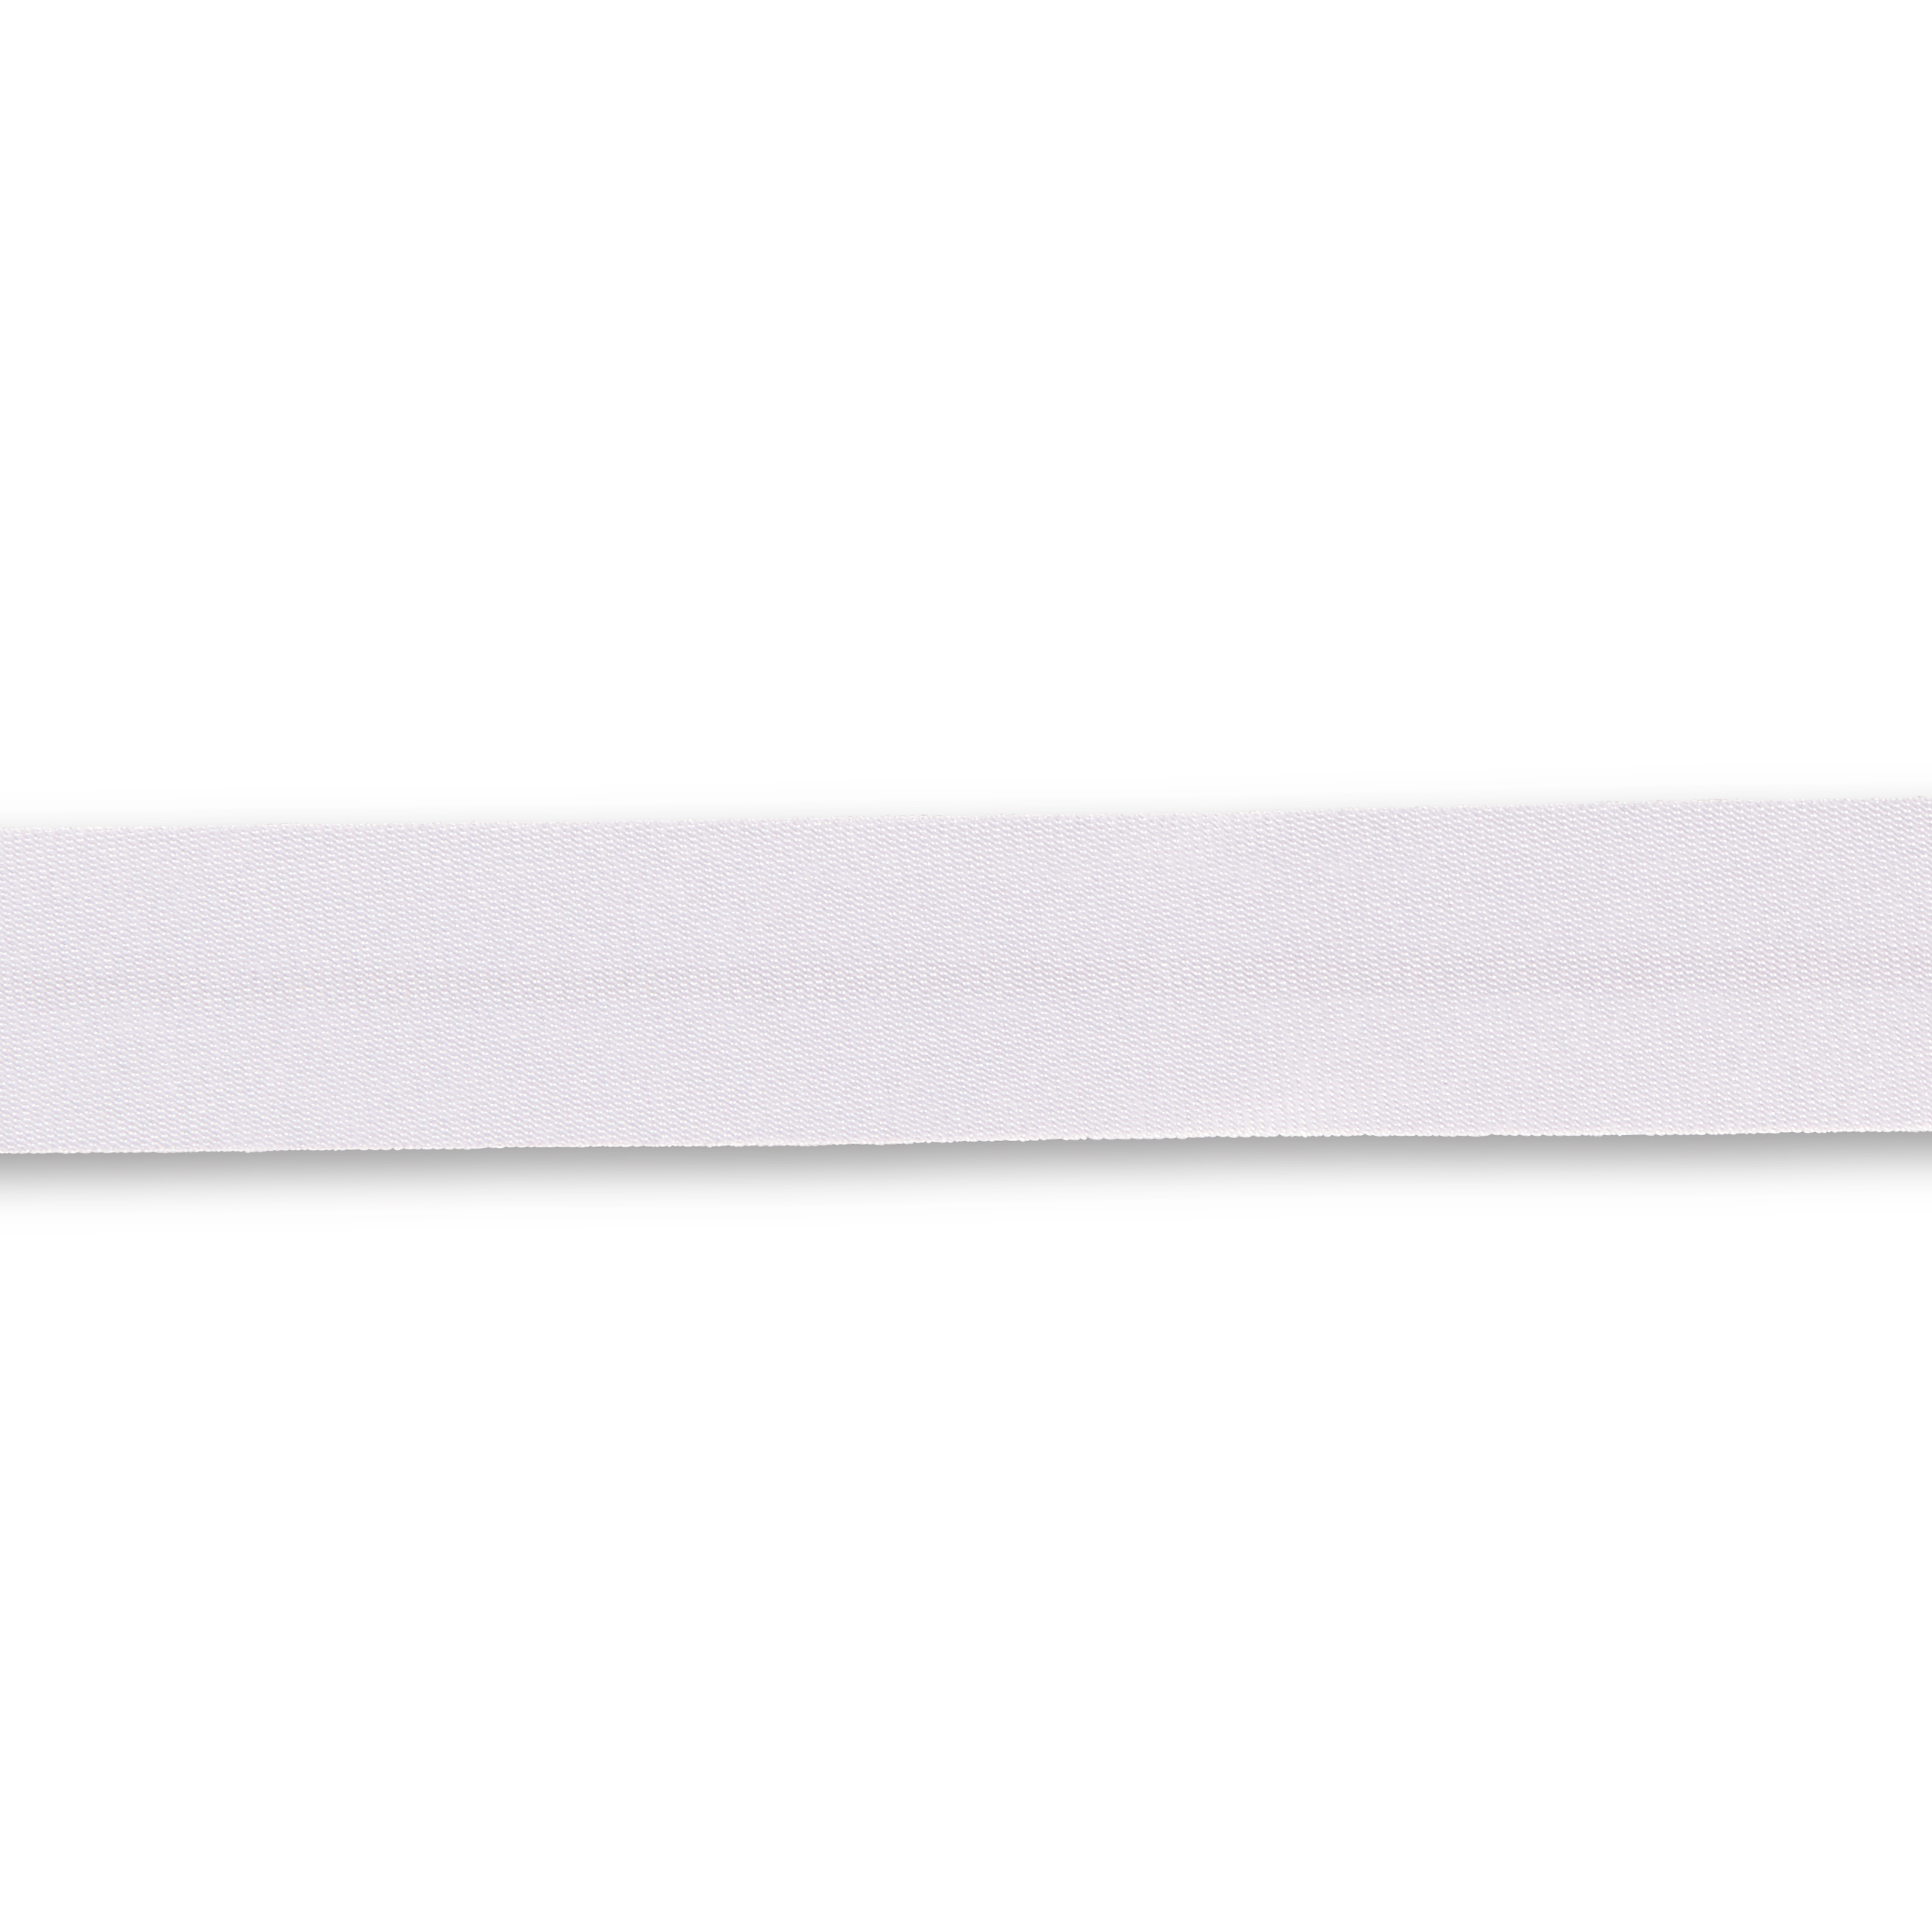 Schrägband Duchesse 40/20 mm weiß, Meterware, Einfassband  